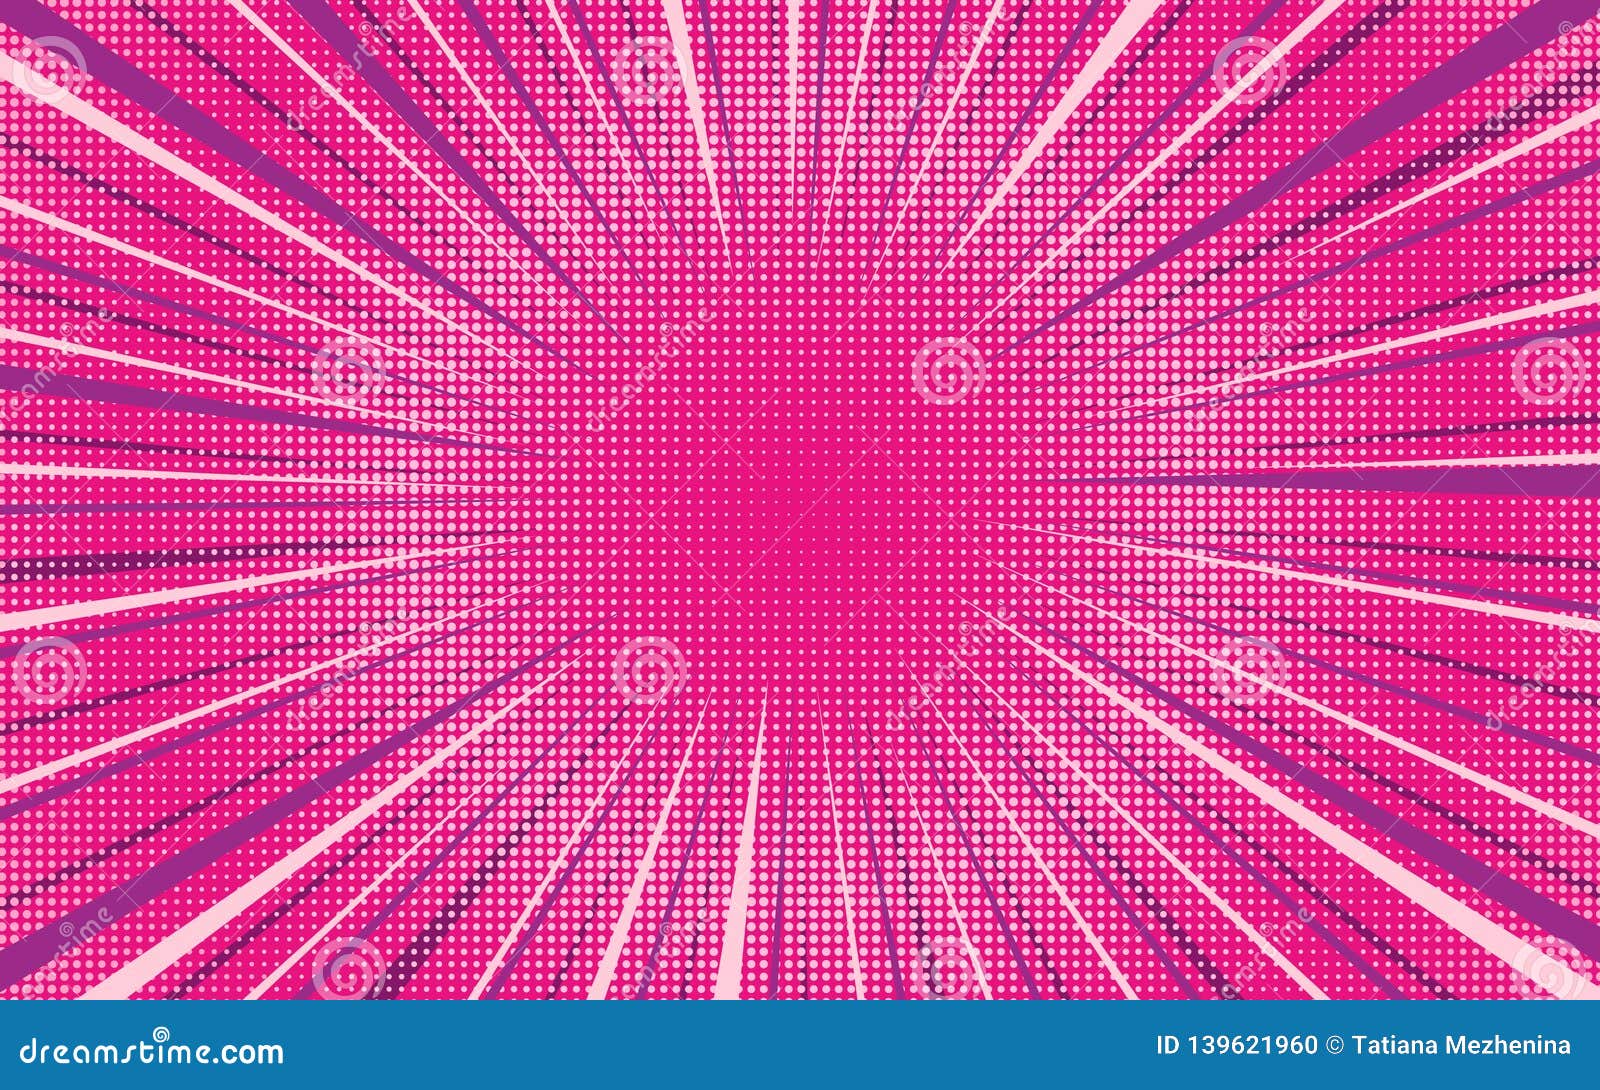 Hình nền Vector nền trang trí nổi bật màu hồng nổ giúp cho máy tính của bạn trở nên đẹp và cuốn hút hơn. Nền phấn hồng nổ tạo cảm giác rực rỡ, mạnh mẽ và năng động. Hãy sử dụng hình nền này để tăng thêm sự tiếp thêm cho ngày làm việc và học tập của bạn.